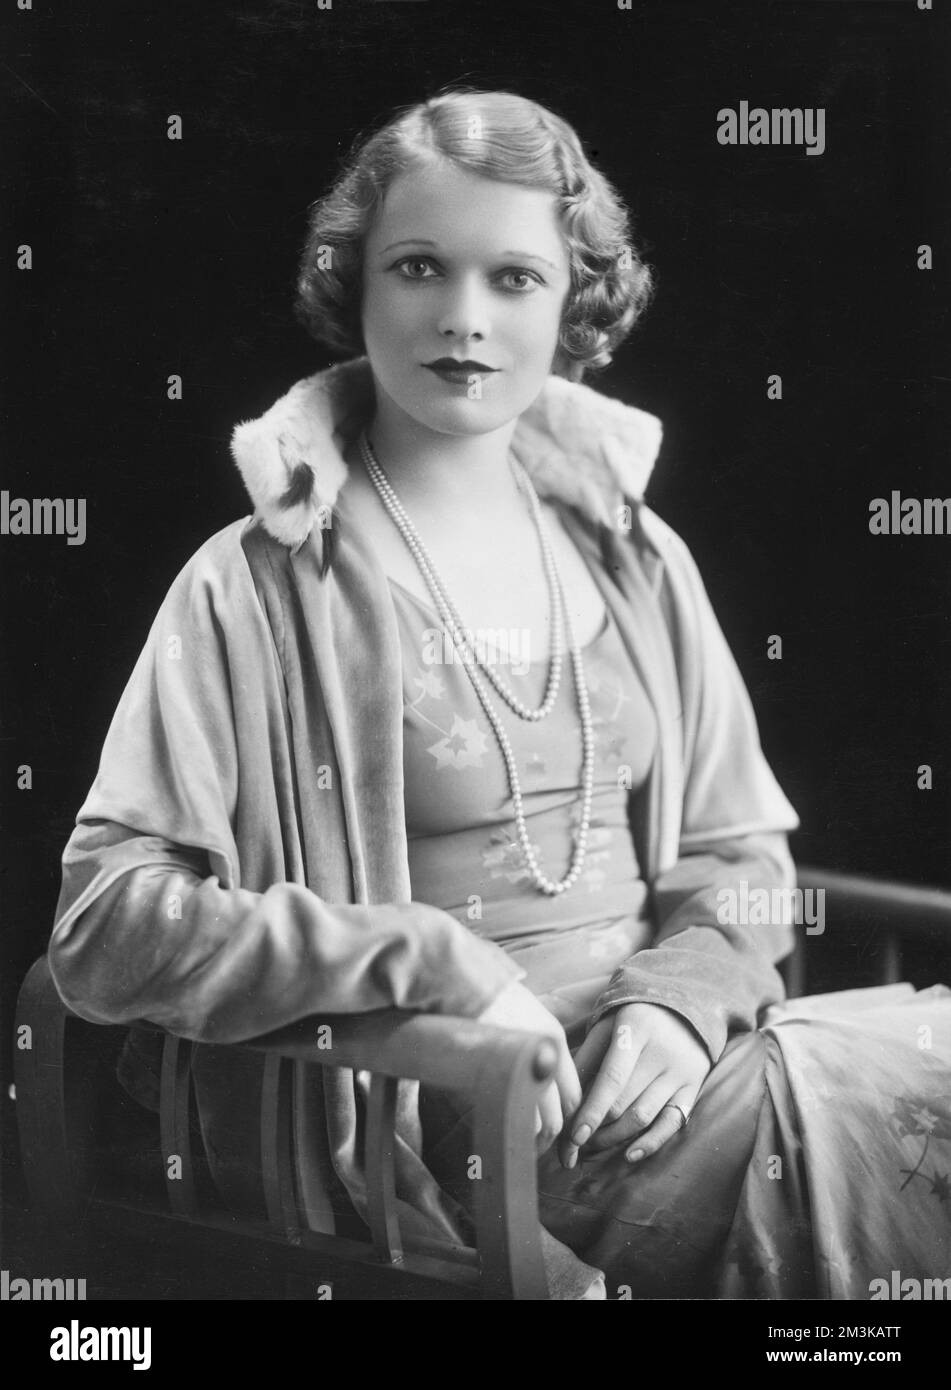 Portrait photographique de Dame Anna Neagle (1903 - 1986), née Flora Marjorie Robertson, actrice et star de cinéma britannique. Neagle s'associe rapidement à la photo historique représentant Nell Gwynn et la reine Victoria sur l'écran argenté. c.1932 Banque D'Images